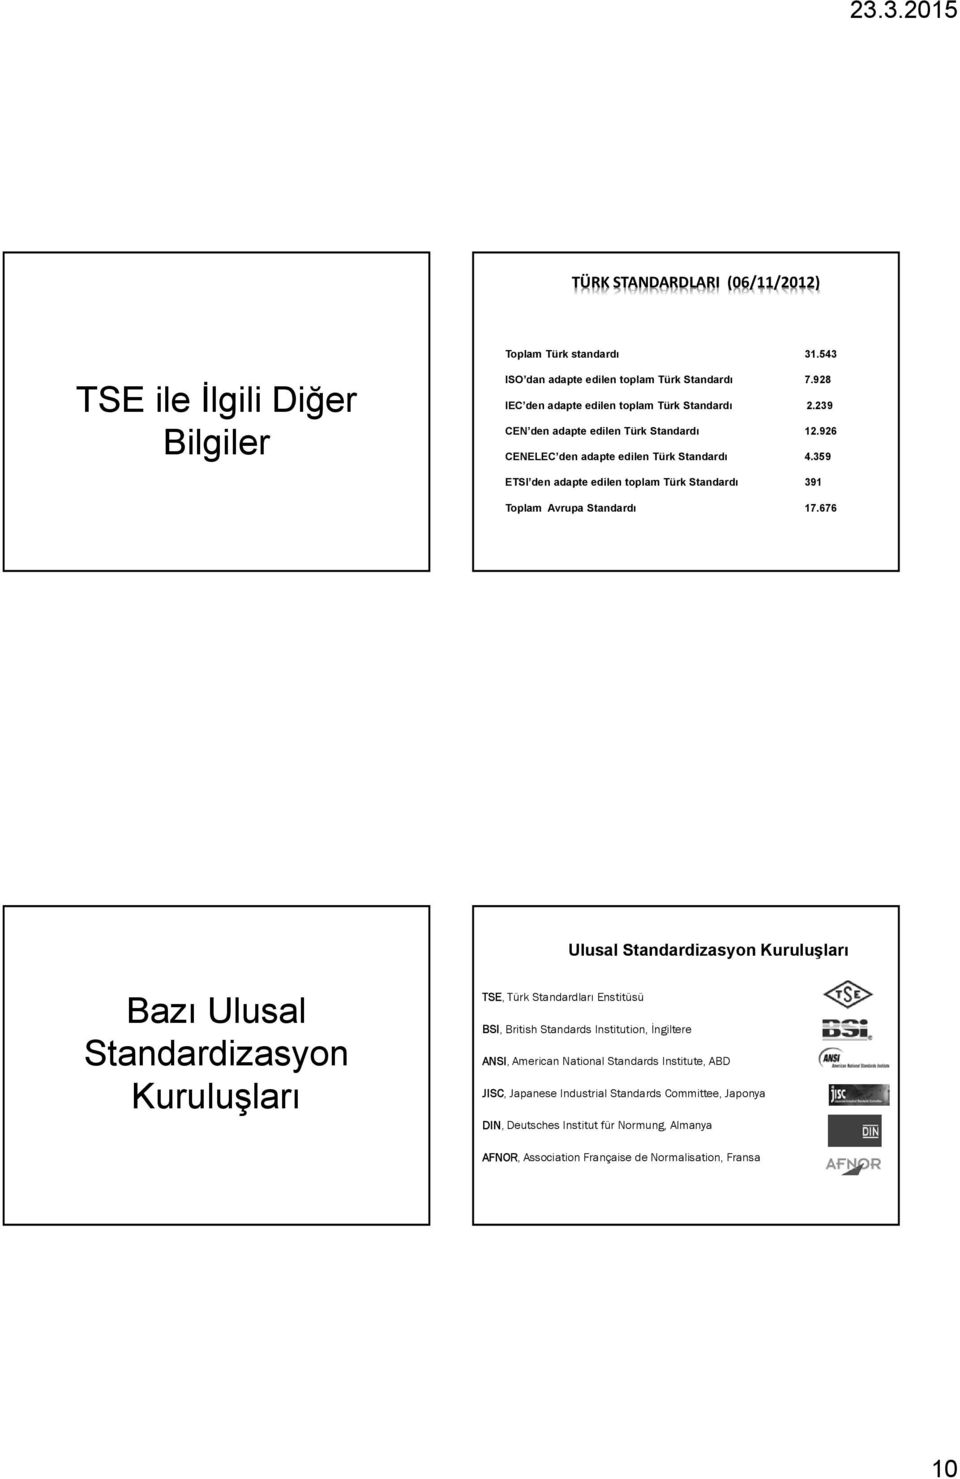 359 ETSI den adapte edilen toplam Türk Standardı 391 Toplam Avrupa Standardı 17.